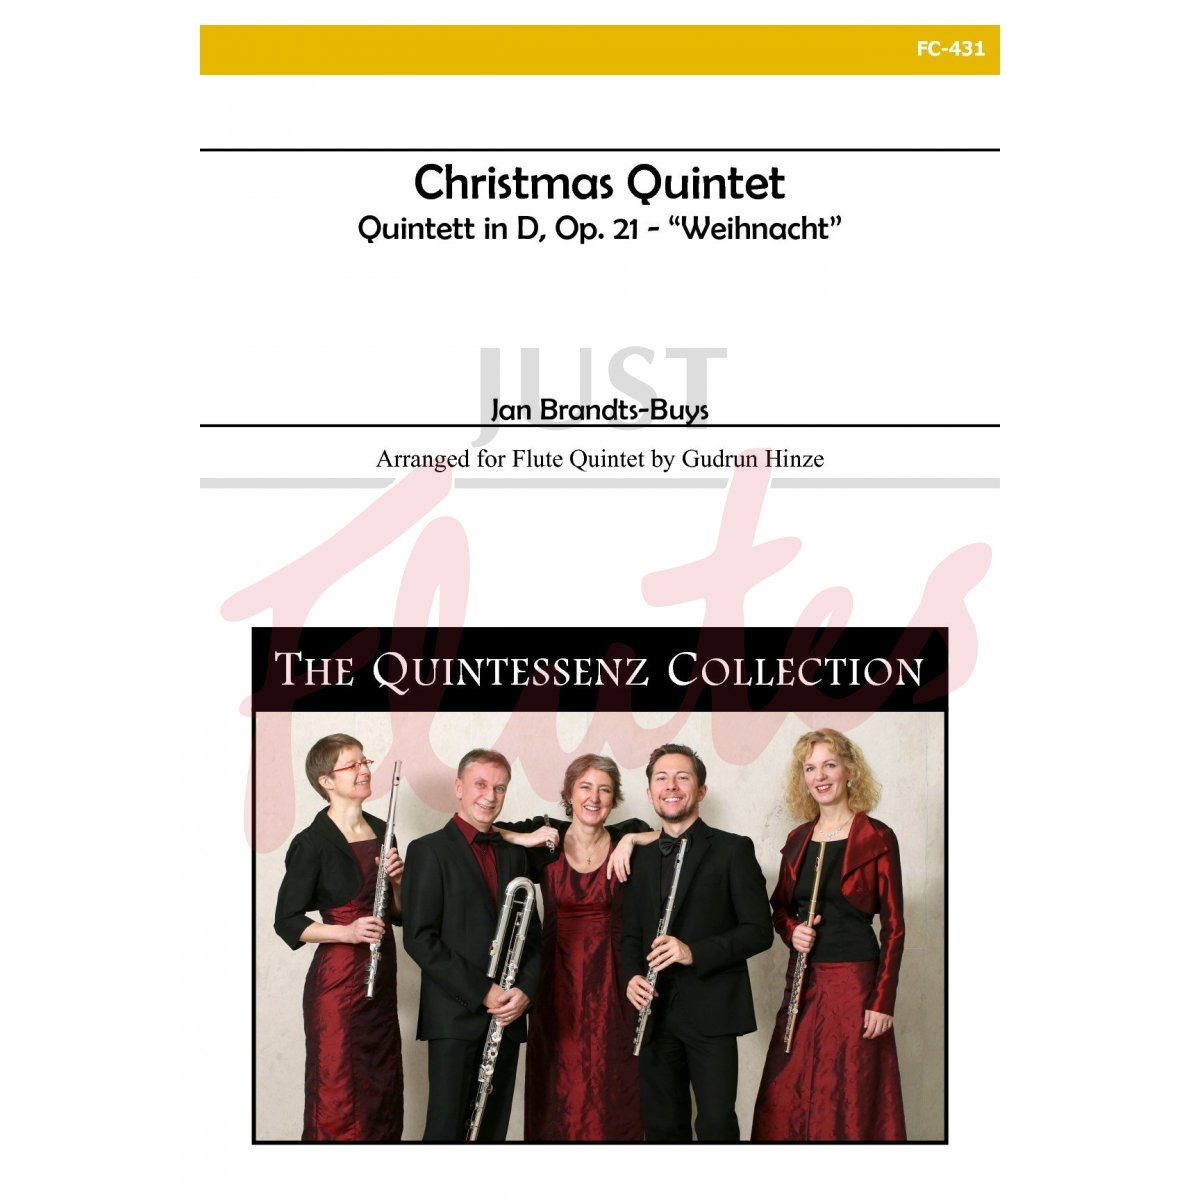 Christmas Quintet - Quintett in D 'Weihnacht' arranged for Flute Quintet